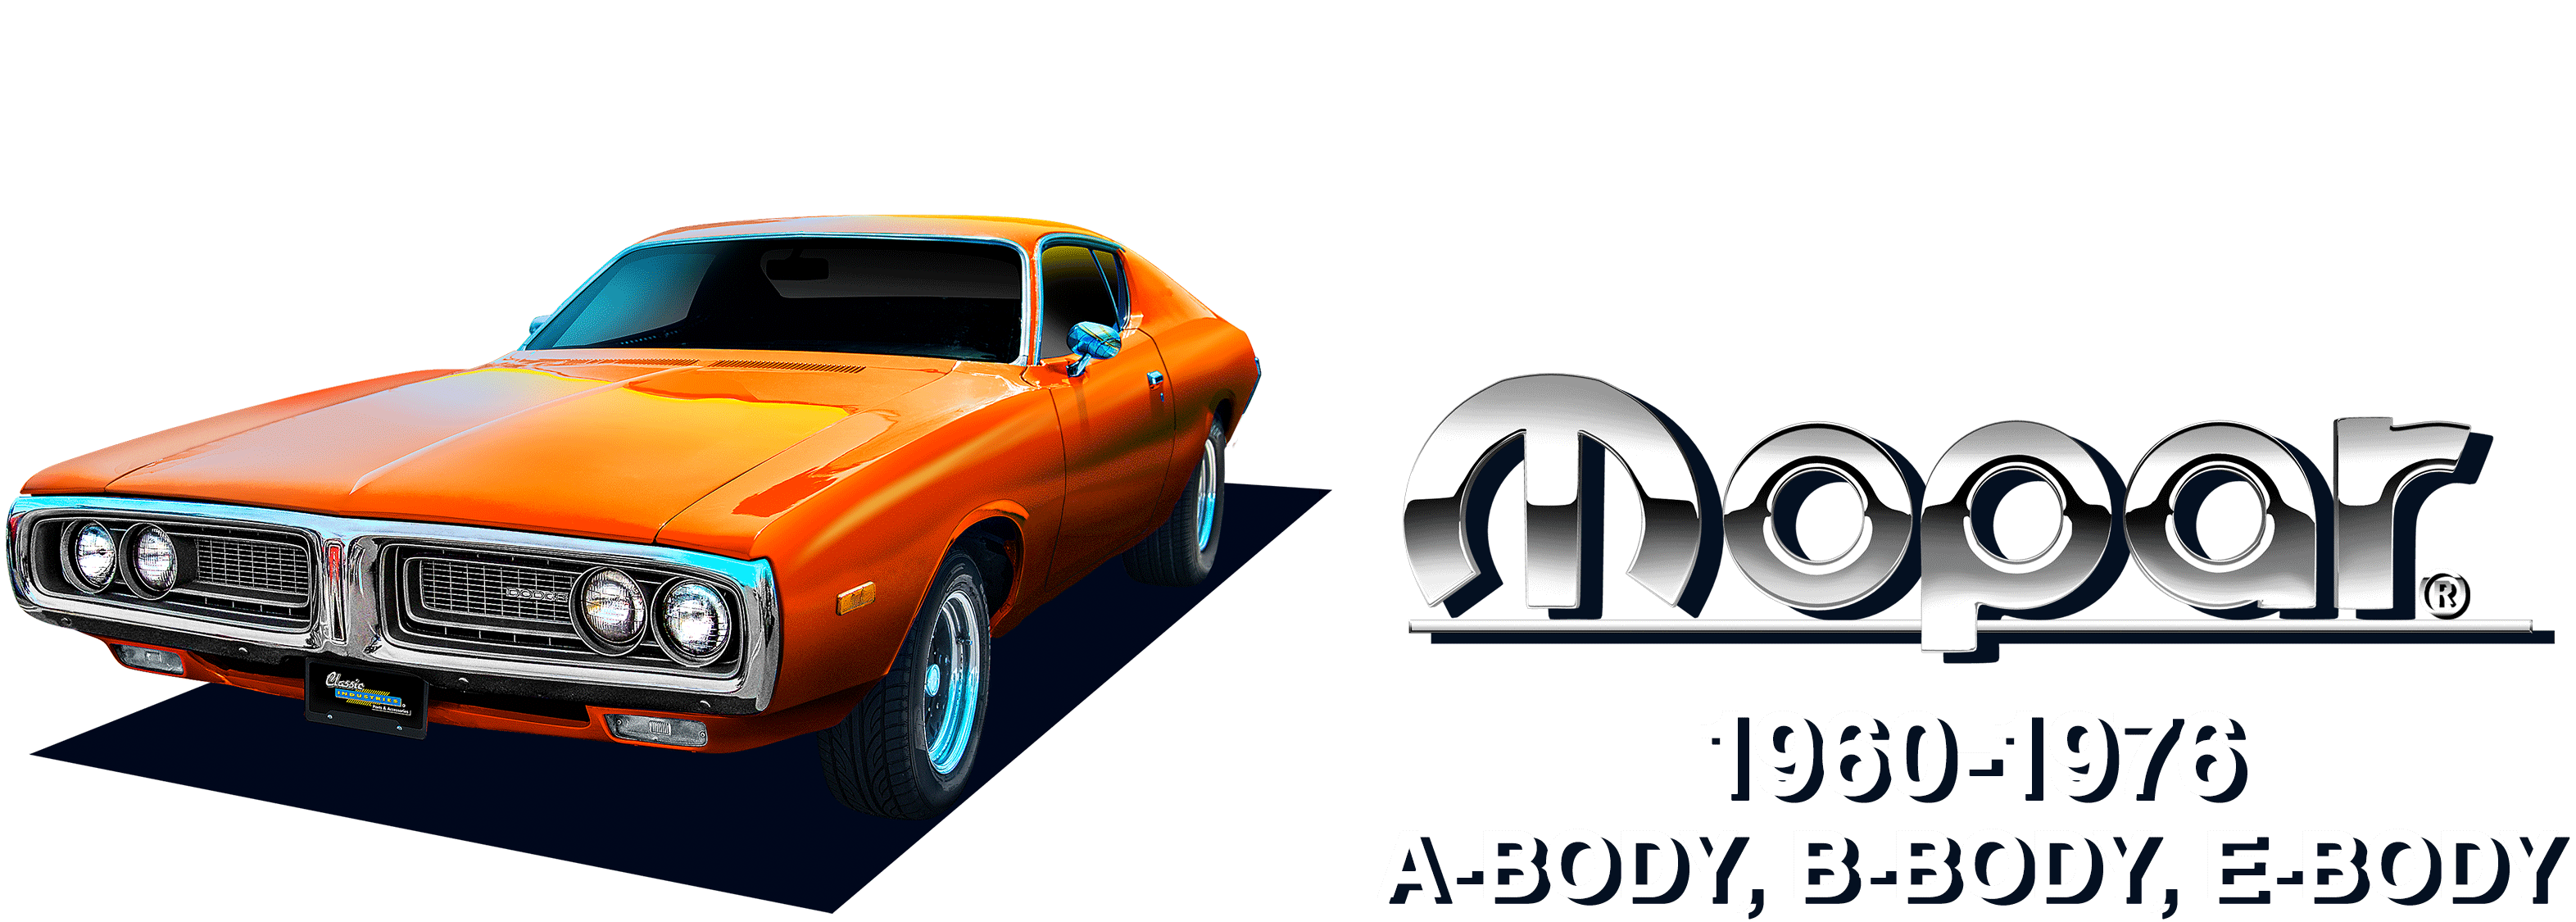 Mopar 1960-1976 A-Body, B-Body, E-Body